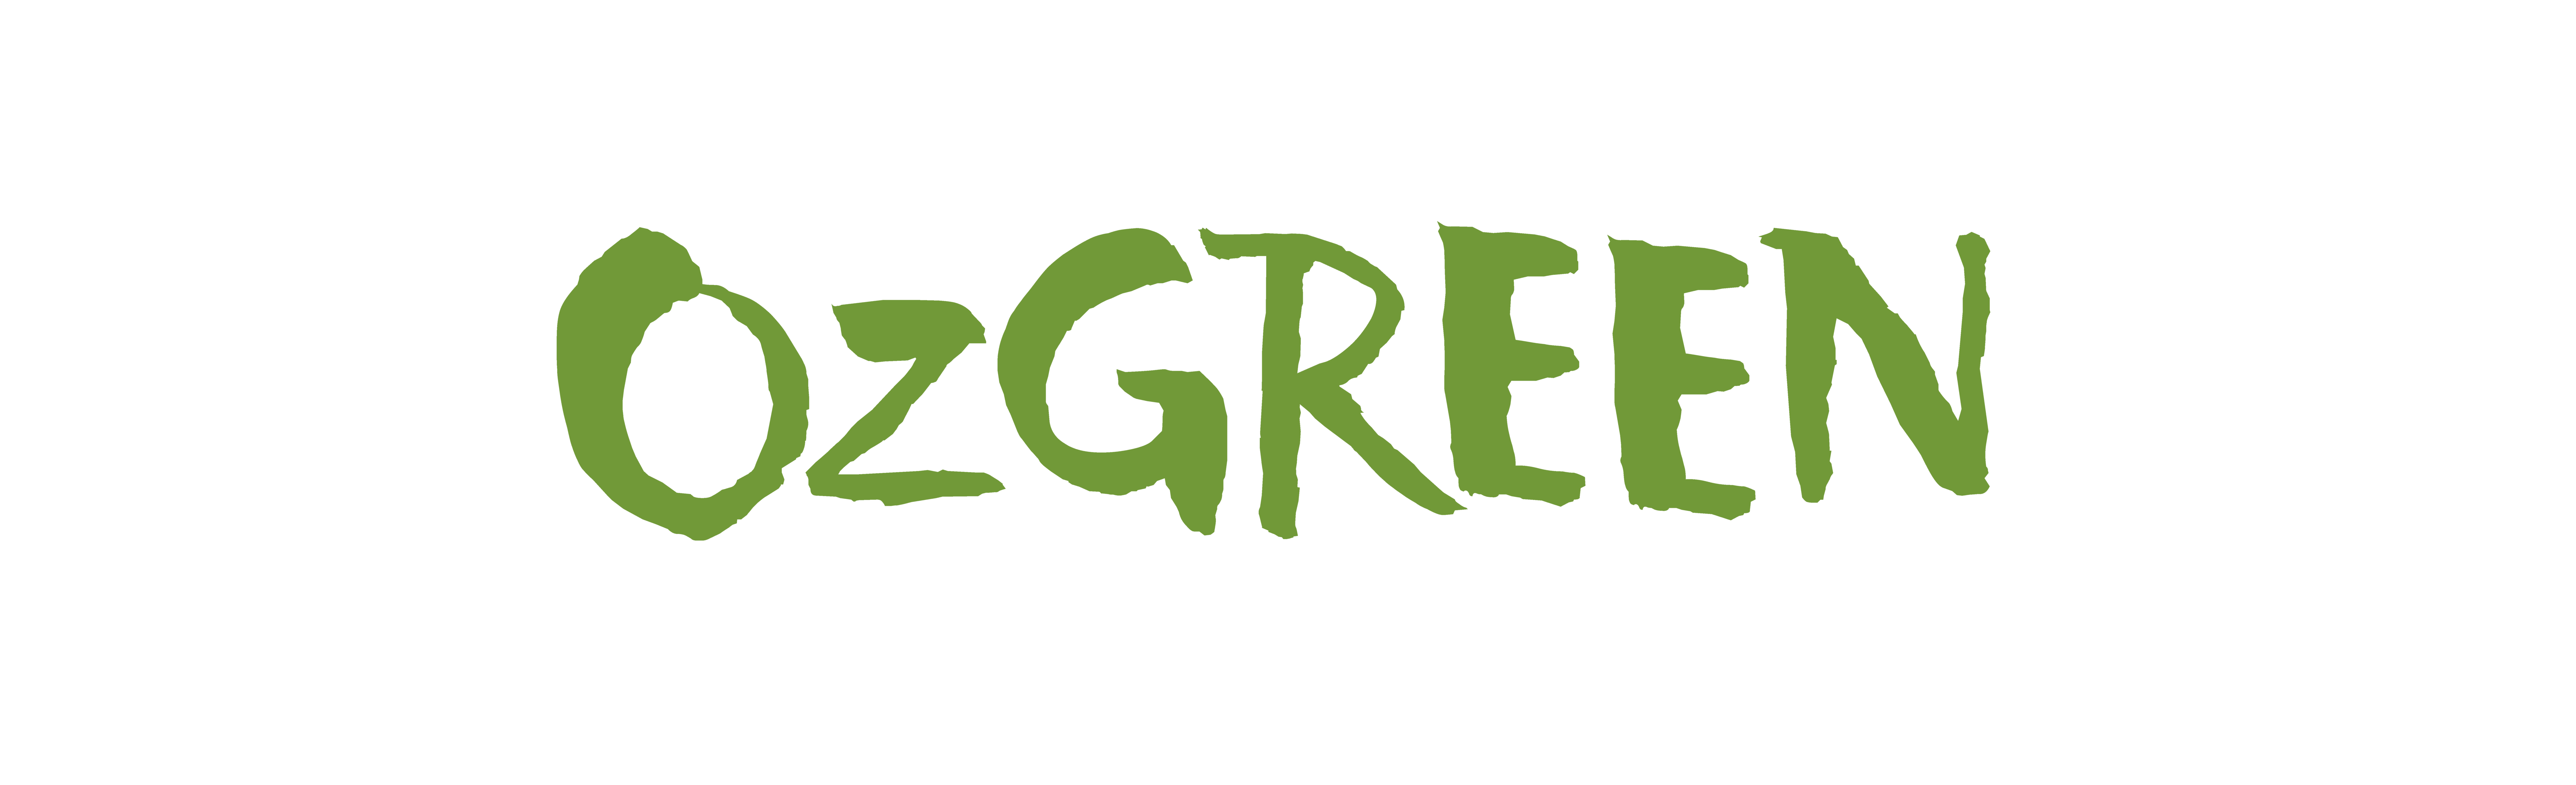 OzGREEN logo